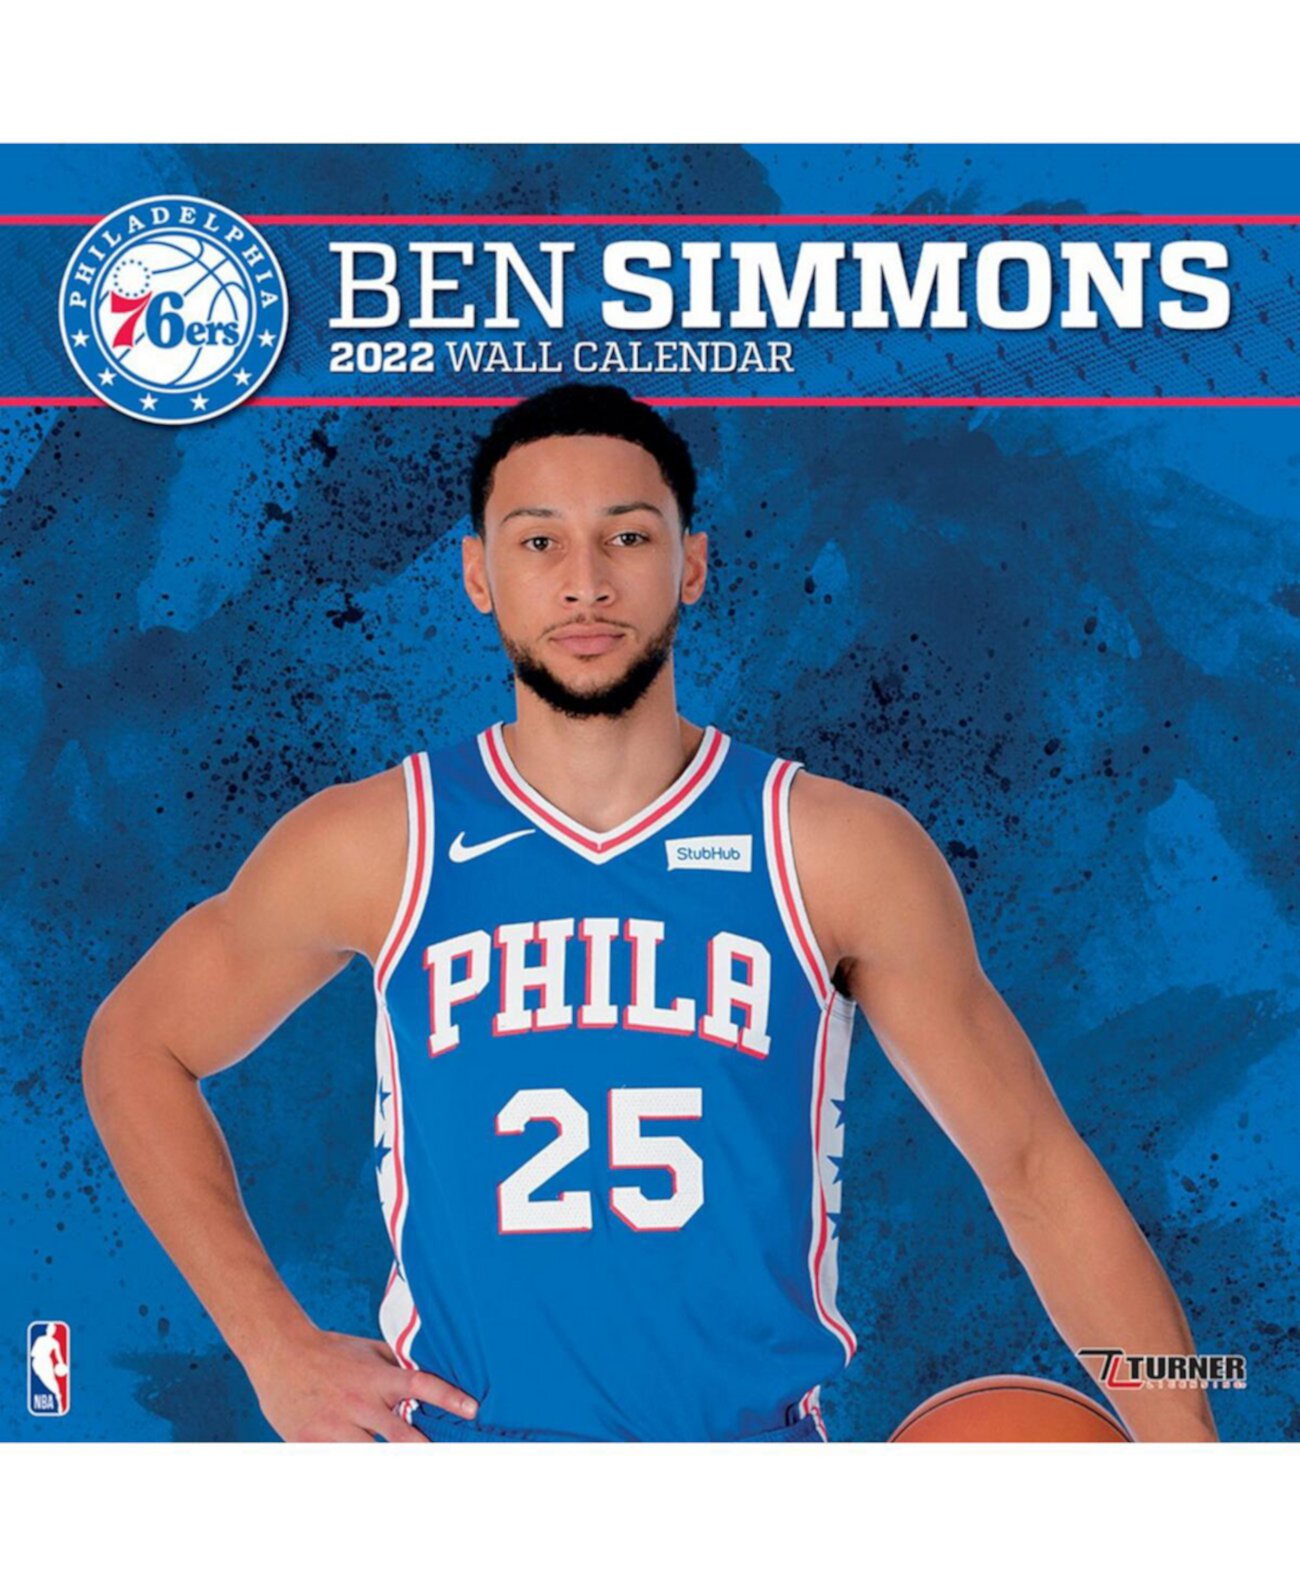 Настенный календарь игрока Ben Simmons Philadelphia 76ers на 2022 год Turner Licensing